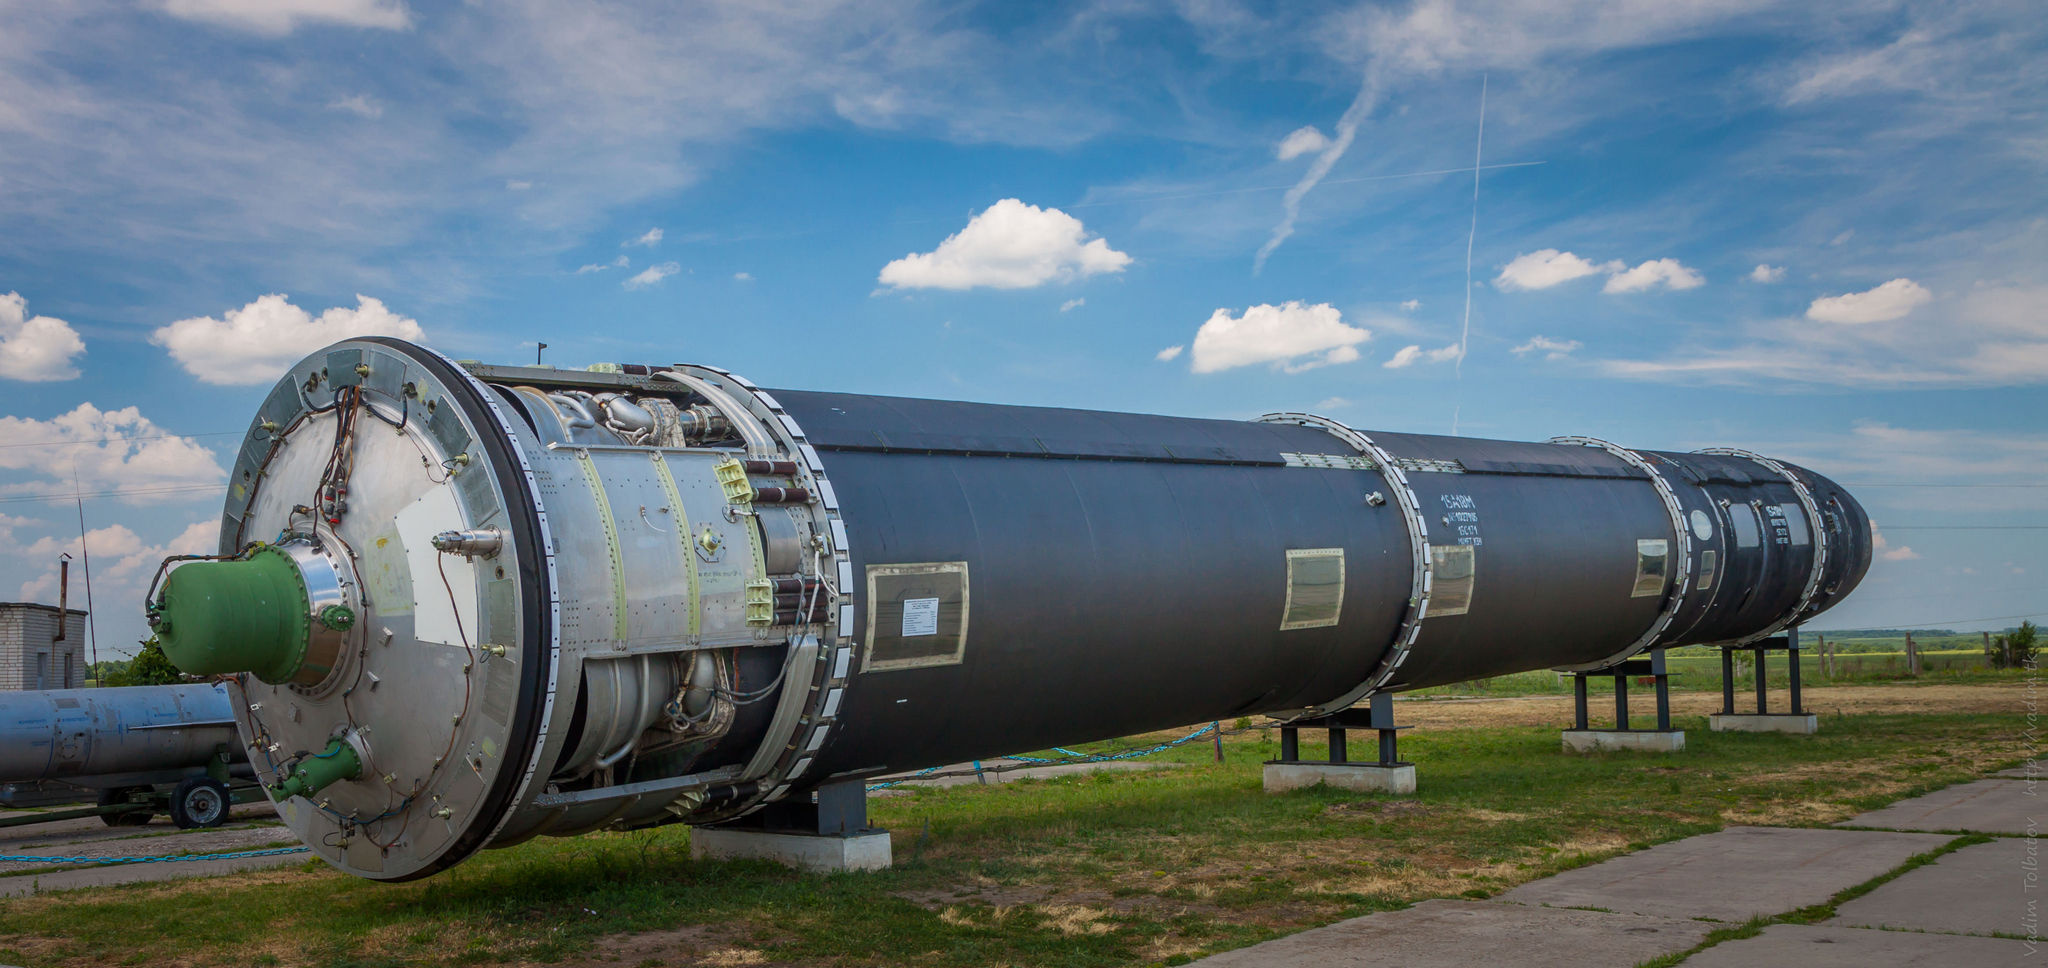 Размер феноменален. Это не самая крупная и тяжелая из баллистических ракет СССР вообще, но из ныне действующих — наиболее внушительная